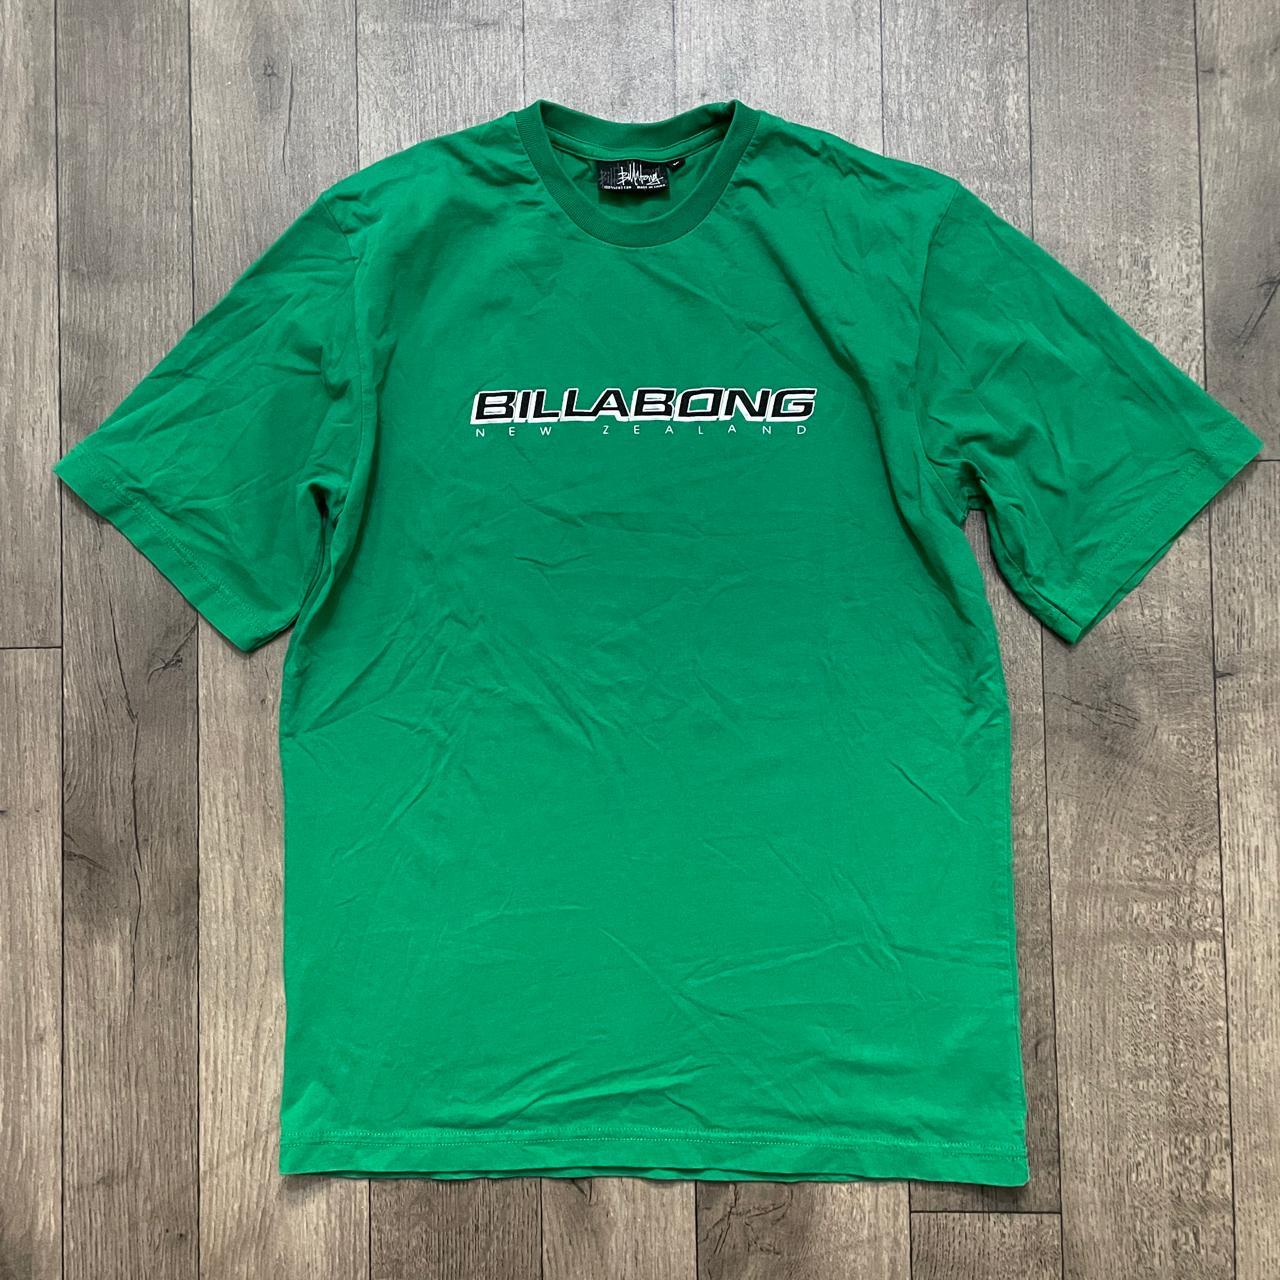 2000s Billabong Green T shirt Size:Medium Pit to... - Depop